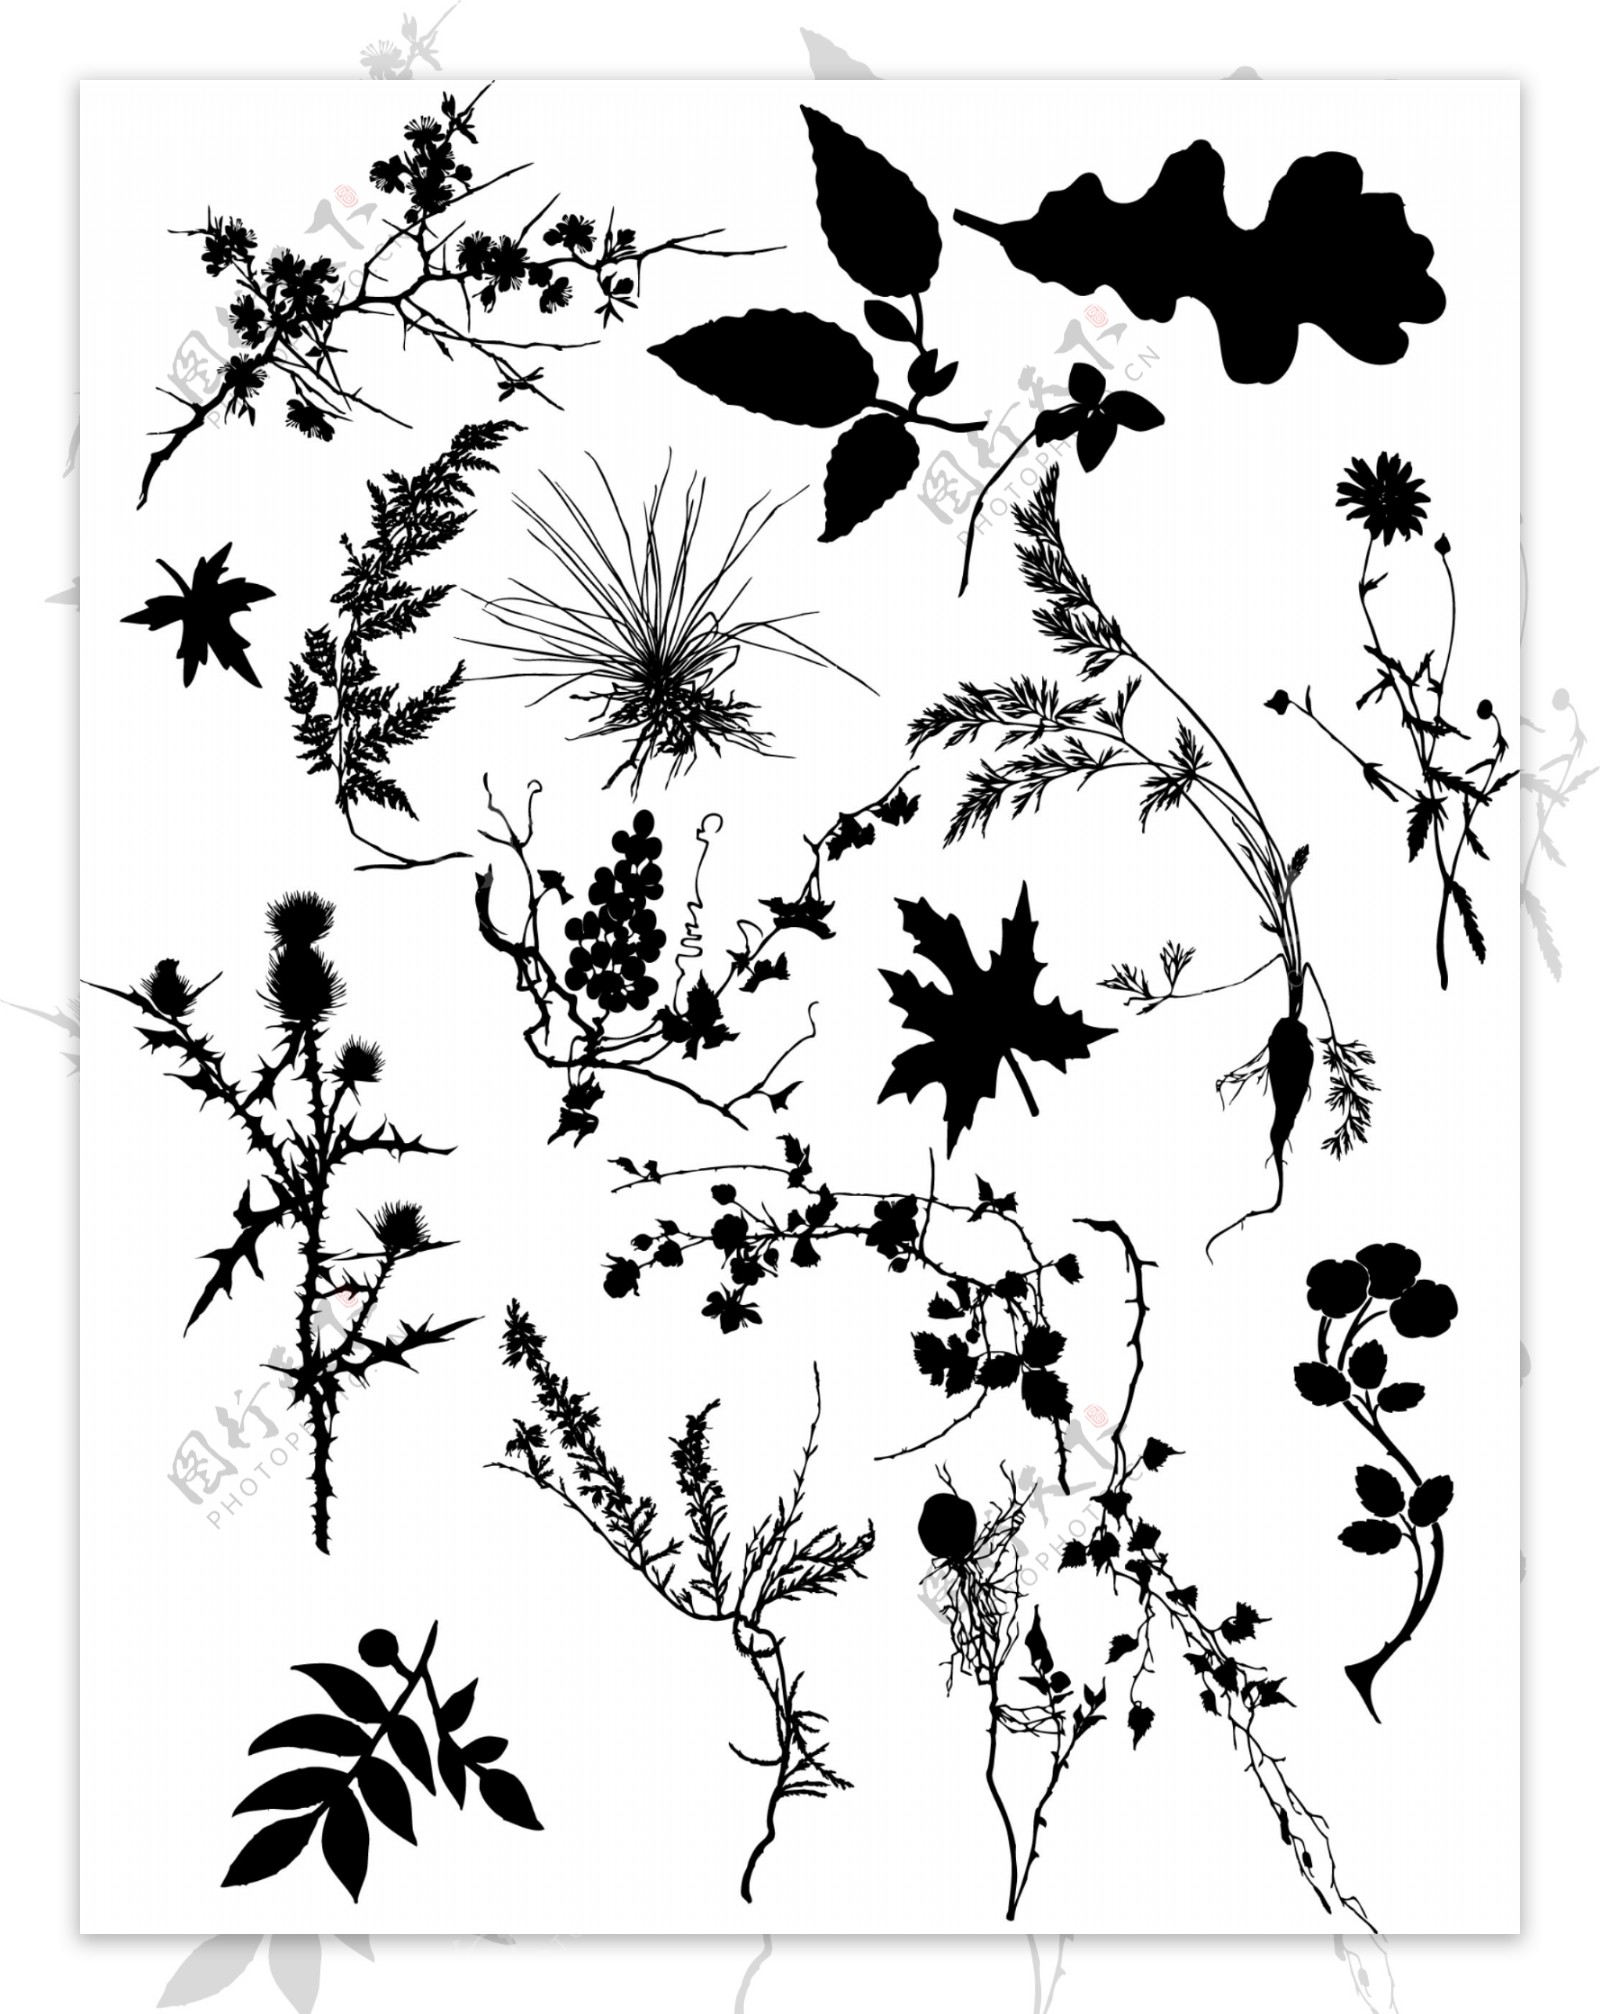 多款植物黑白剪影矢量素材